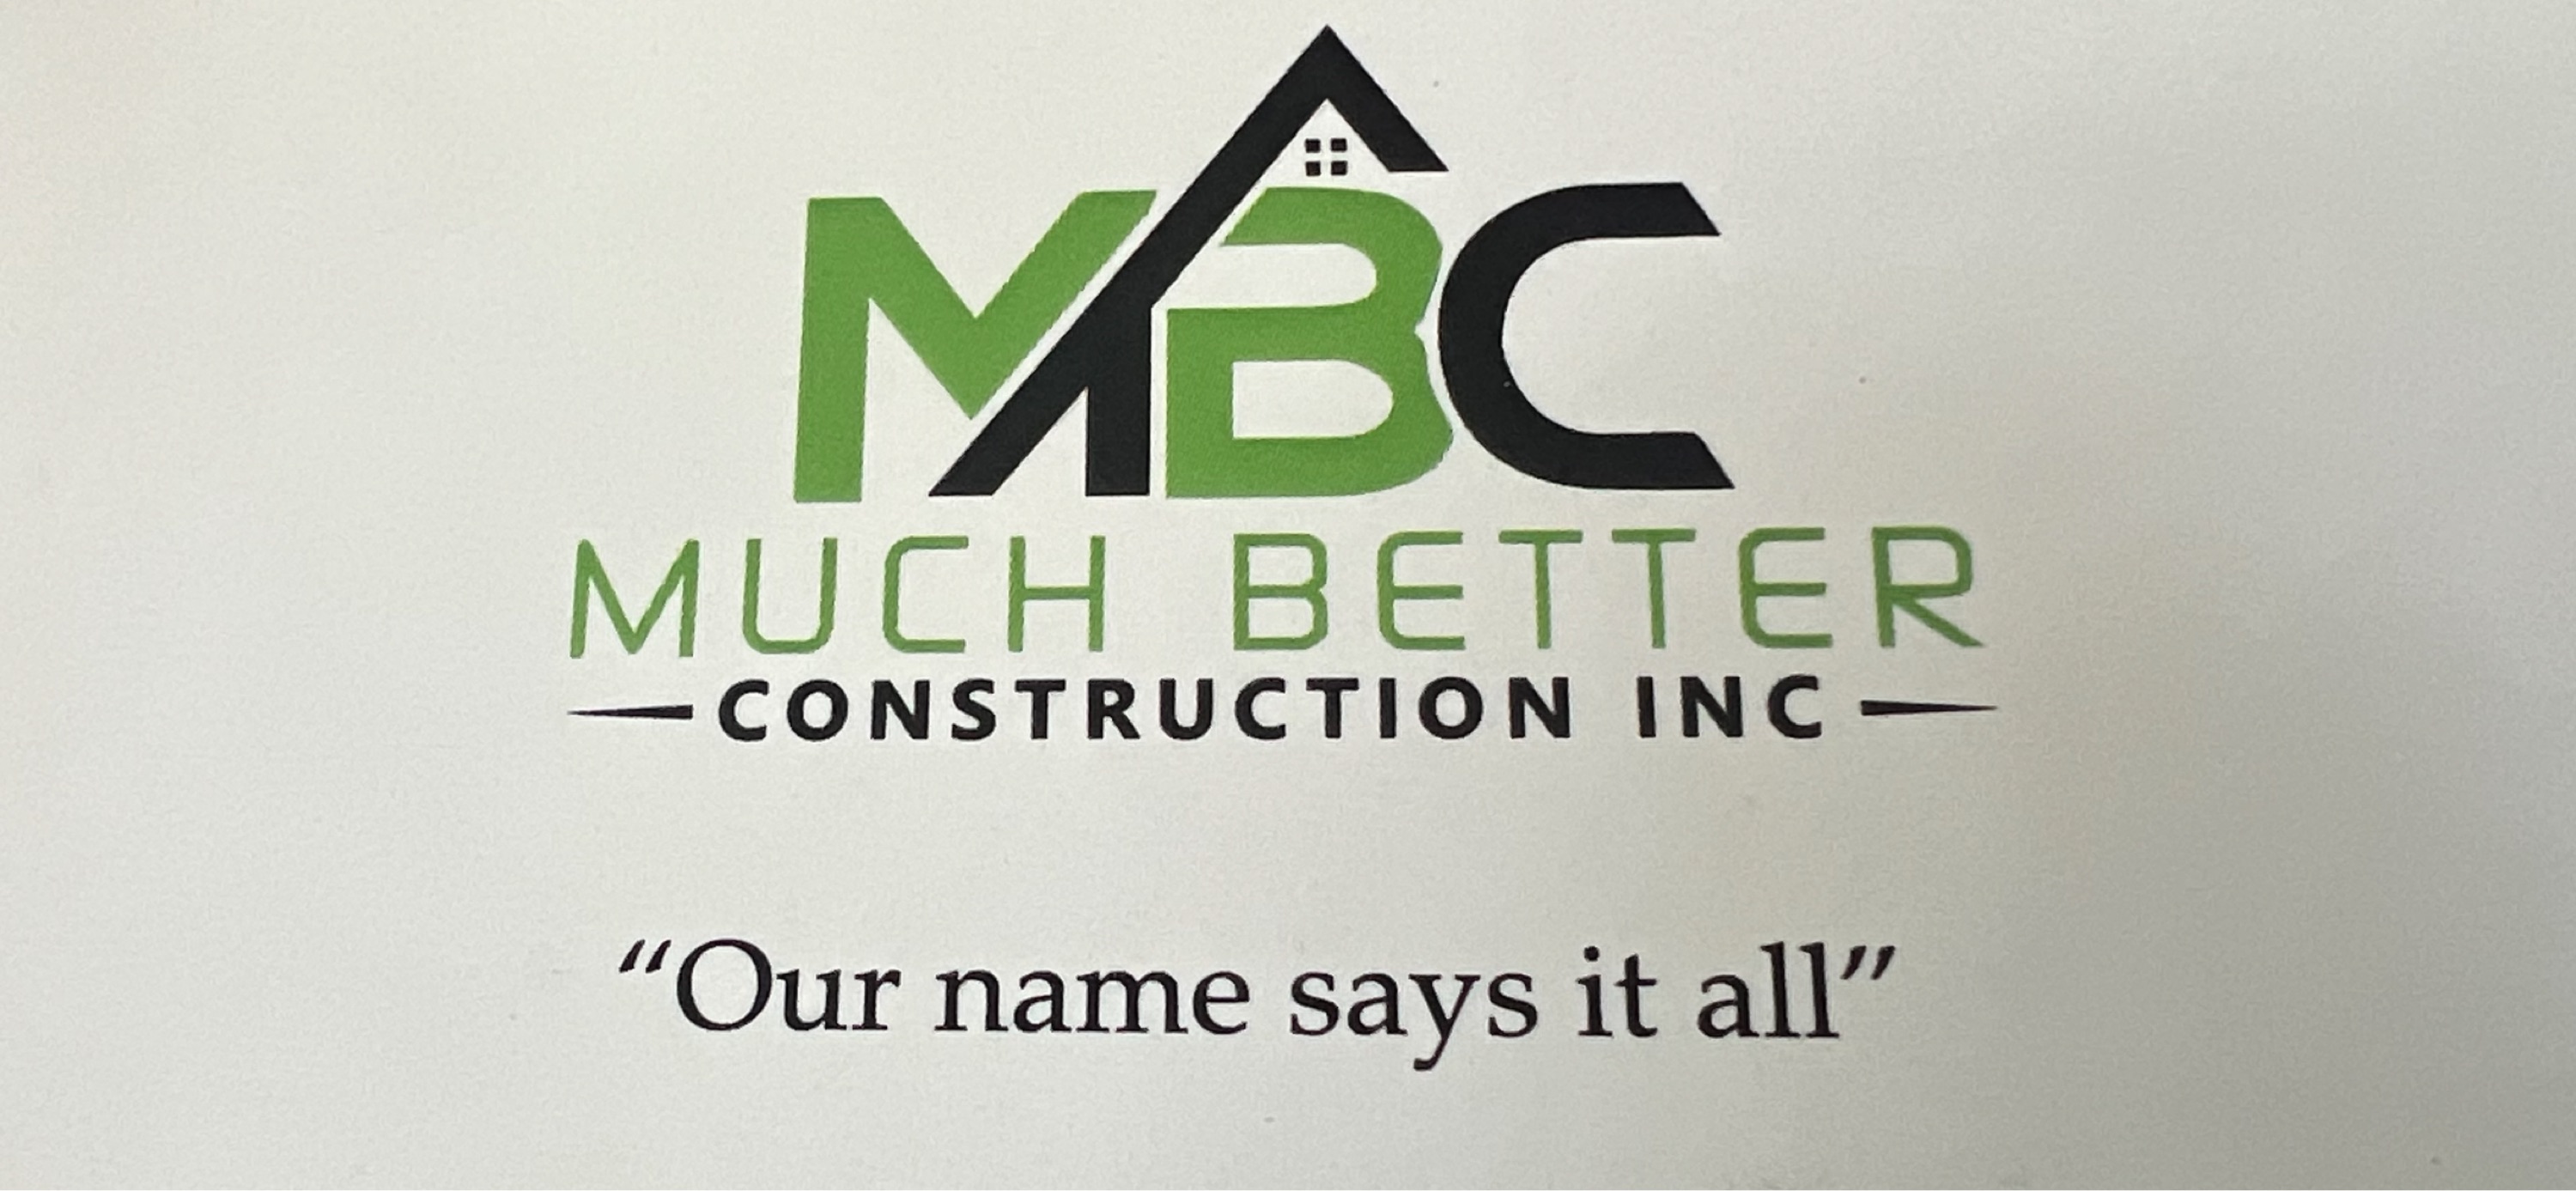 Much Better Construction, Inc. Logo